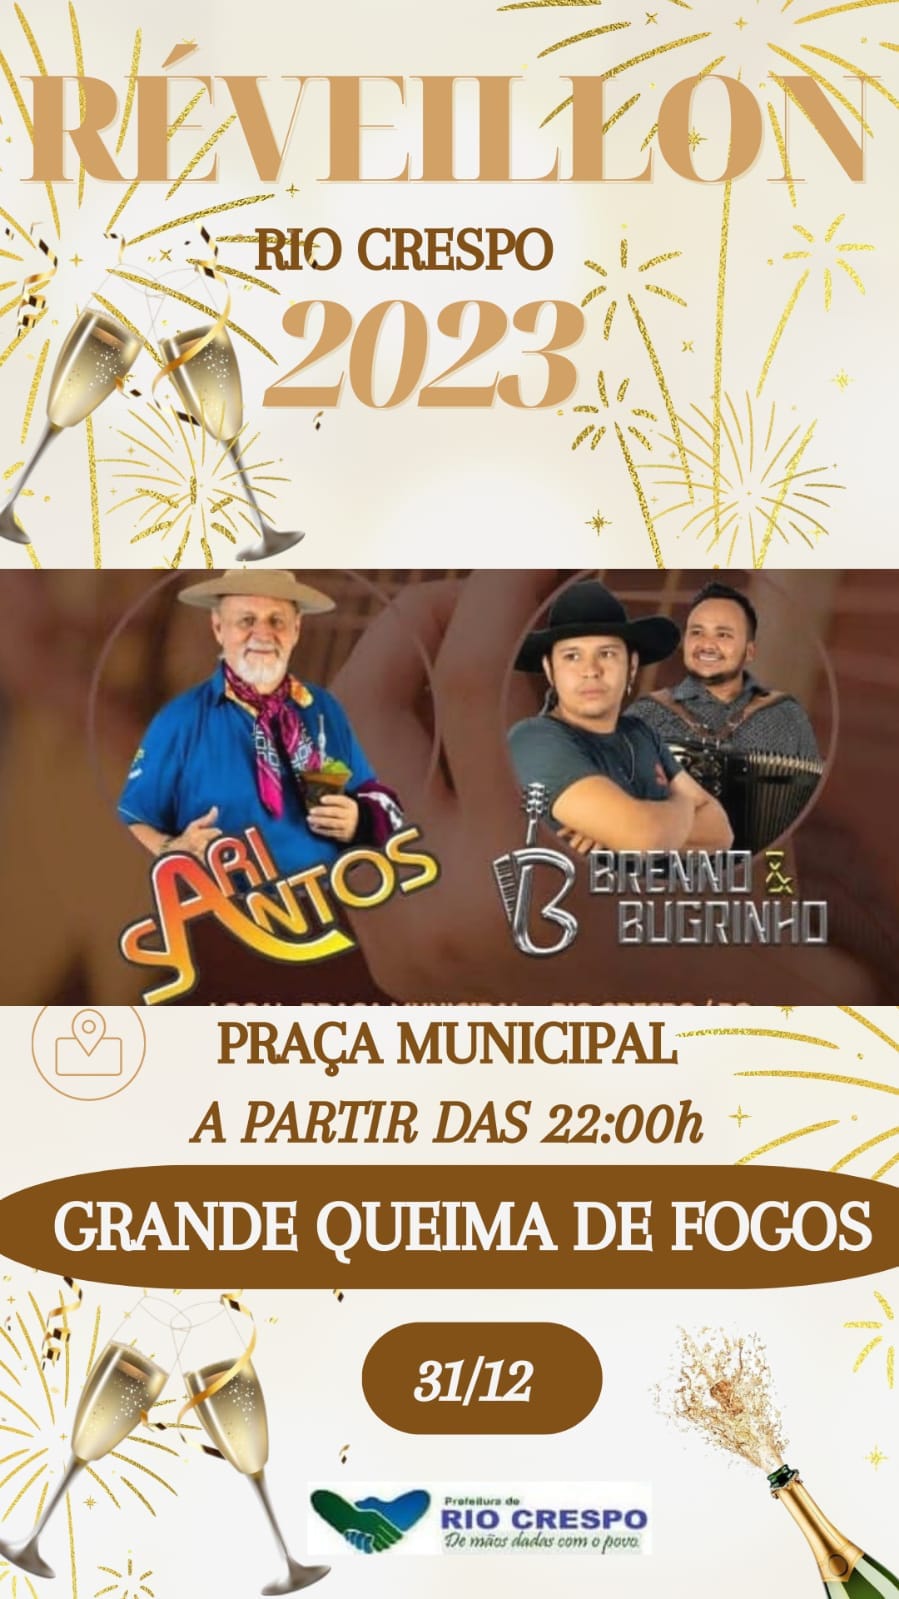 Rio Crespo volta com suas atividades festivas tradicionais com Reveillon 2023